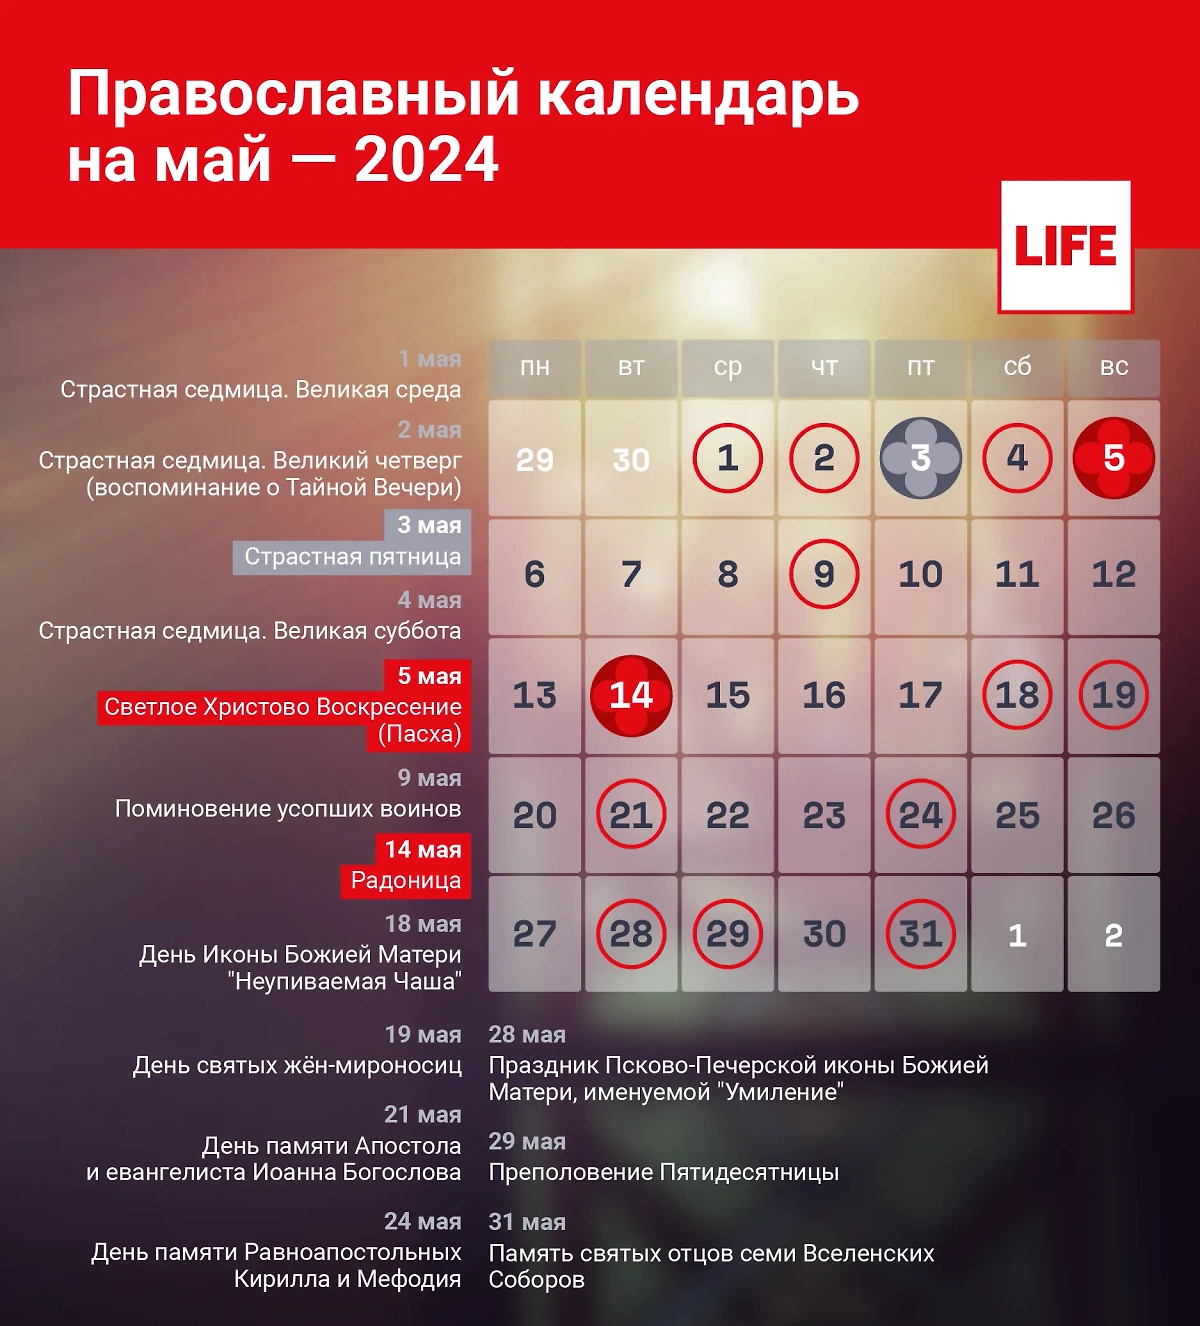 Календарь православных праздников на май 2024 года. Инфографика © Life.ru 